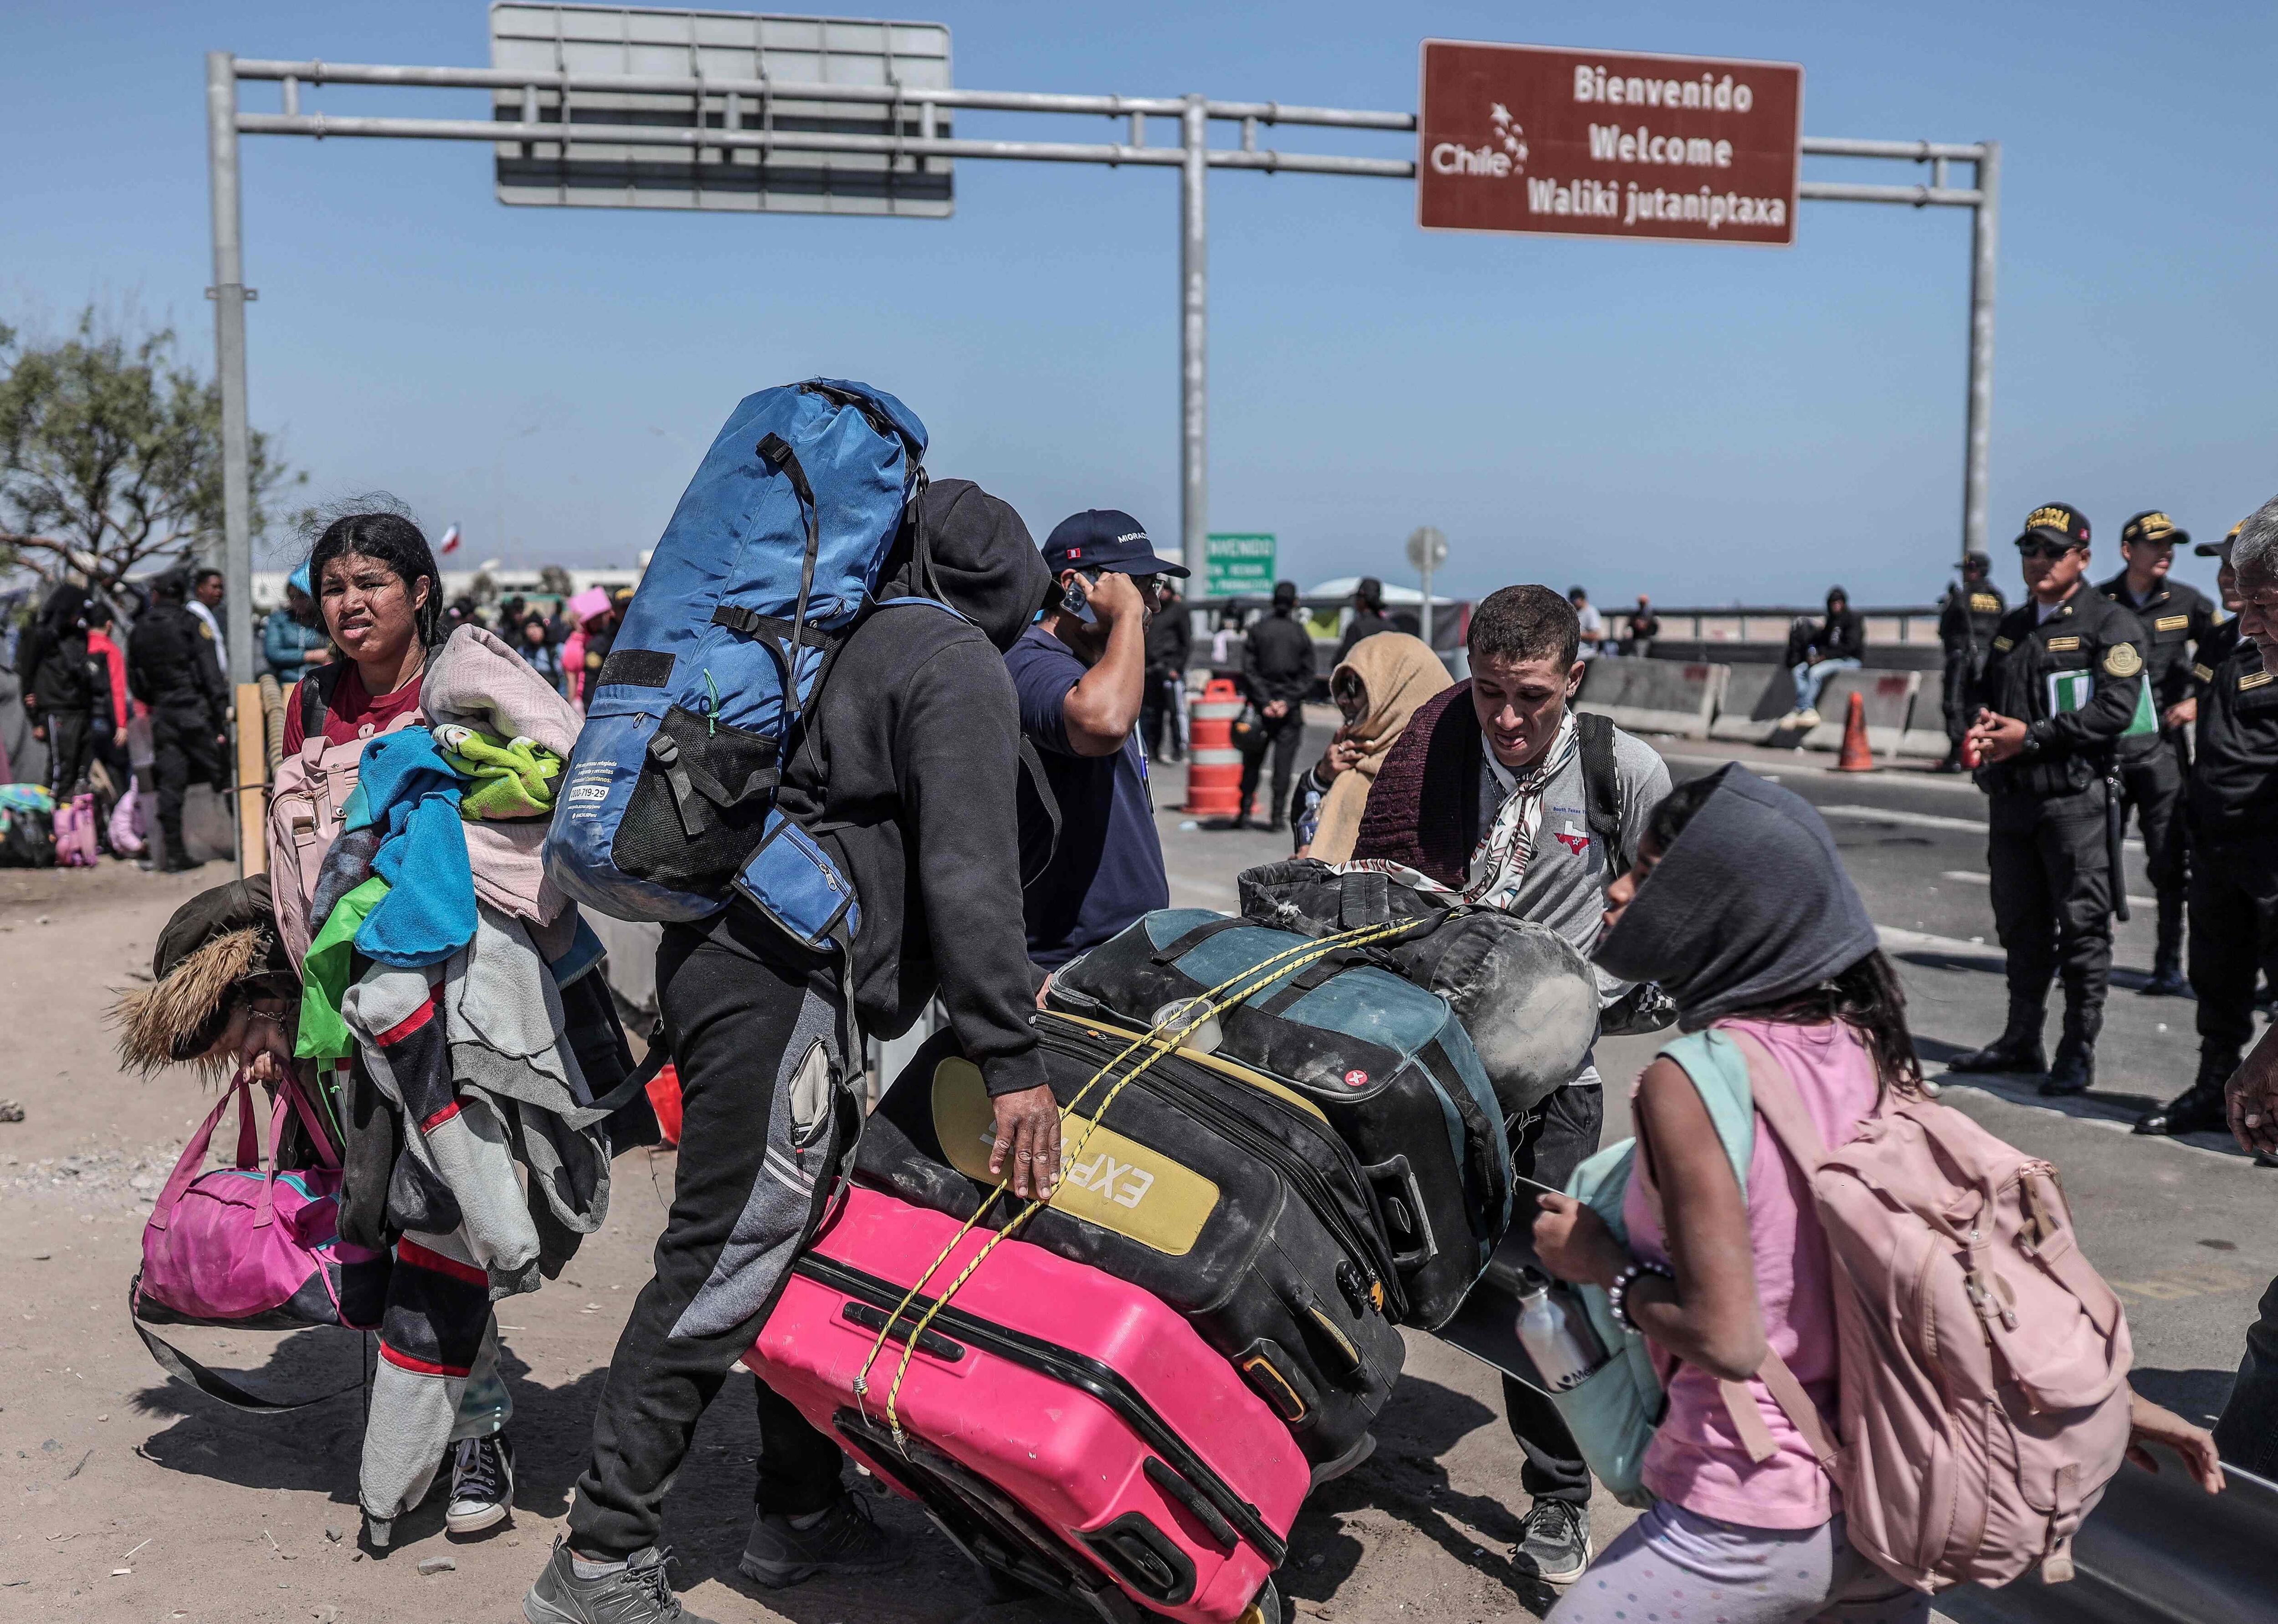 Cientos de migrantes esperan pasar la frontera entre Chile y Perú en busca de poder trasladarse hacia el norte del continente en busca de mejores condiciones para vivir, el principal objetivo es llegar a Estados Unidos. FOTO: